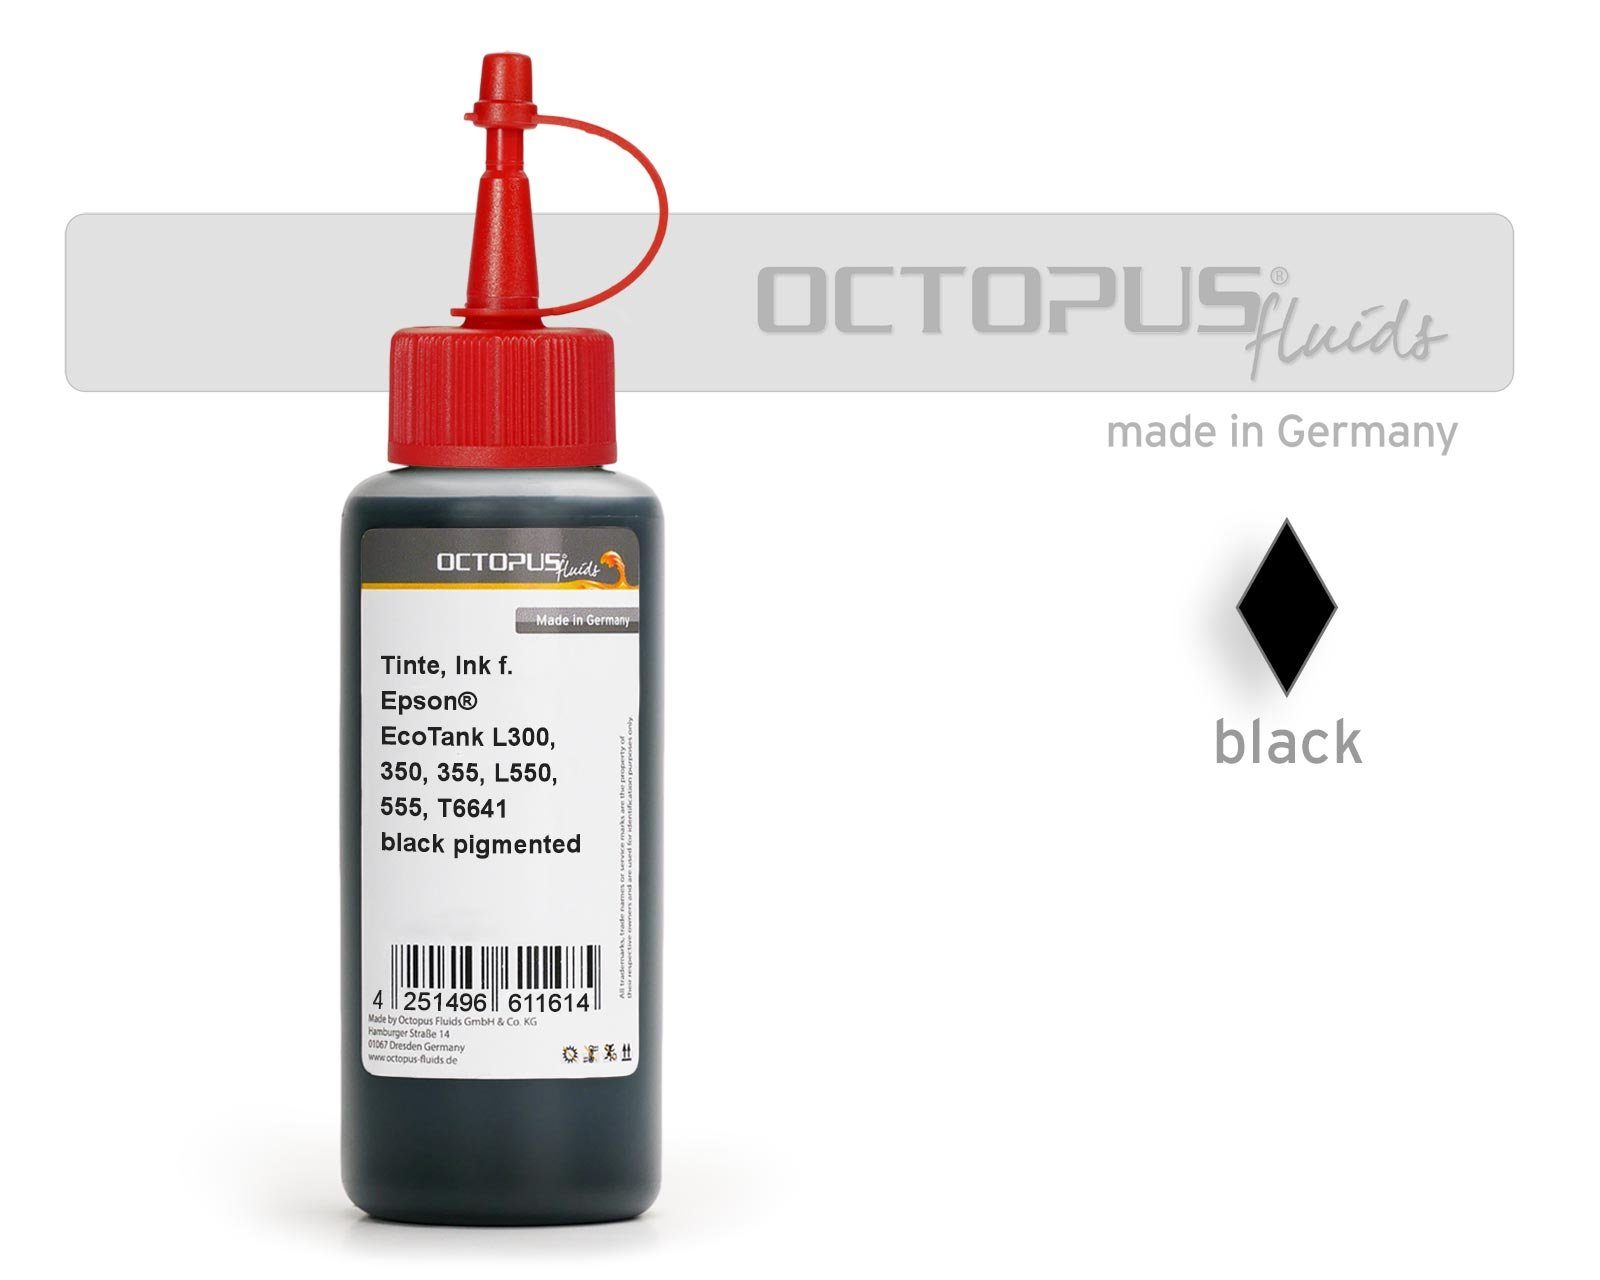 OCTOPUS Fluids Druckertinte Epson EcoTank L300, L355, L555 Drucker, T6641 schwarz Nachfülltinte (für Epson, 1x 100 ml) Schwarz 100ml